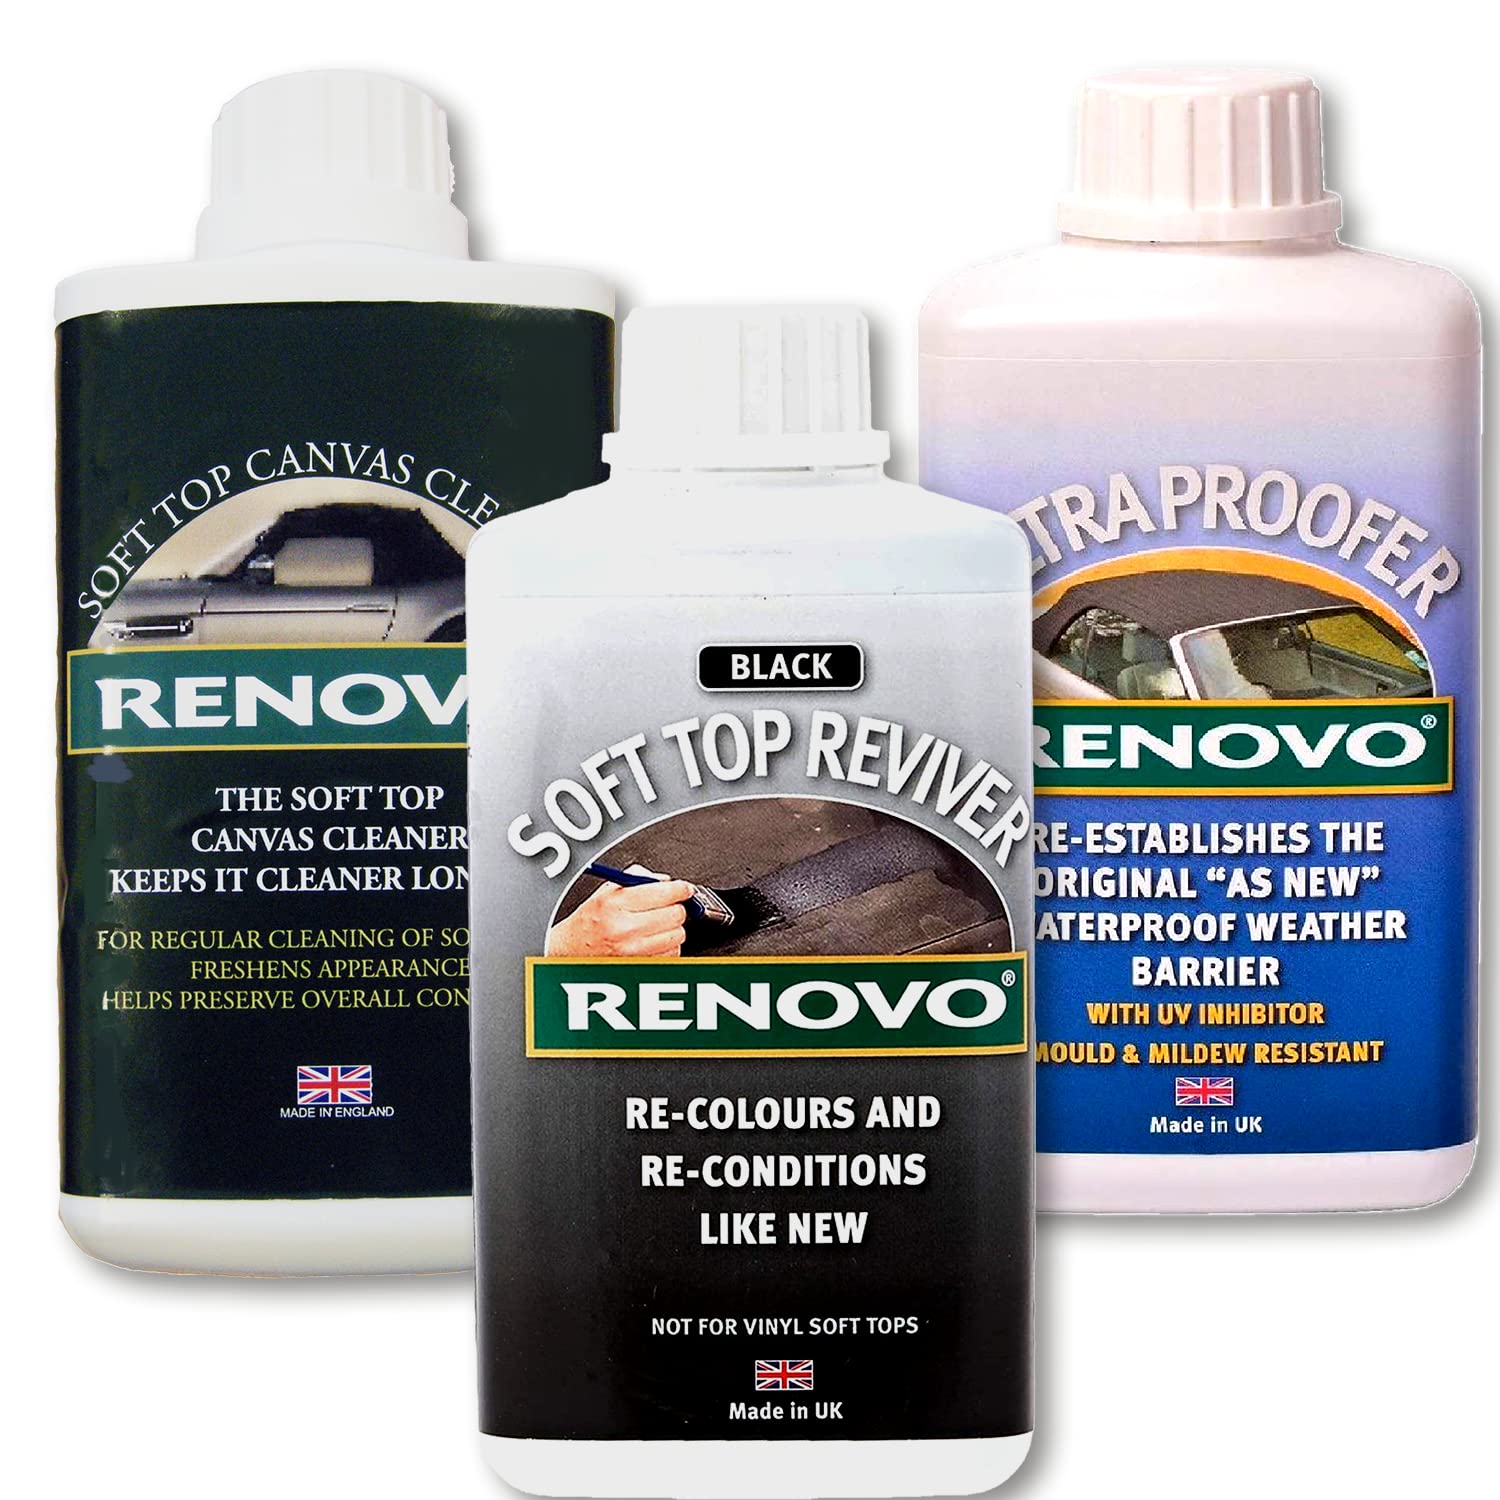 Renovo Ren-KIT2 Triple-Washer-Kit Enthält weiches Top Erneuerer/Soft Top Ultra Proofer/Soft Top Cleaner, Canvas Schwarz von Renovo